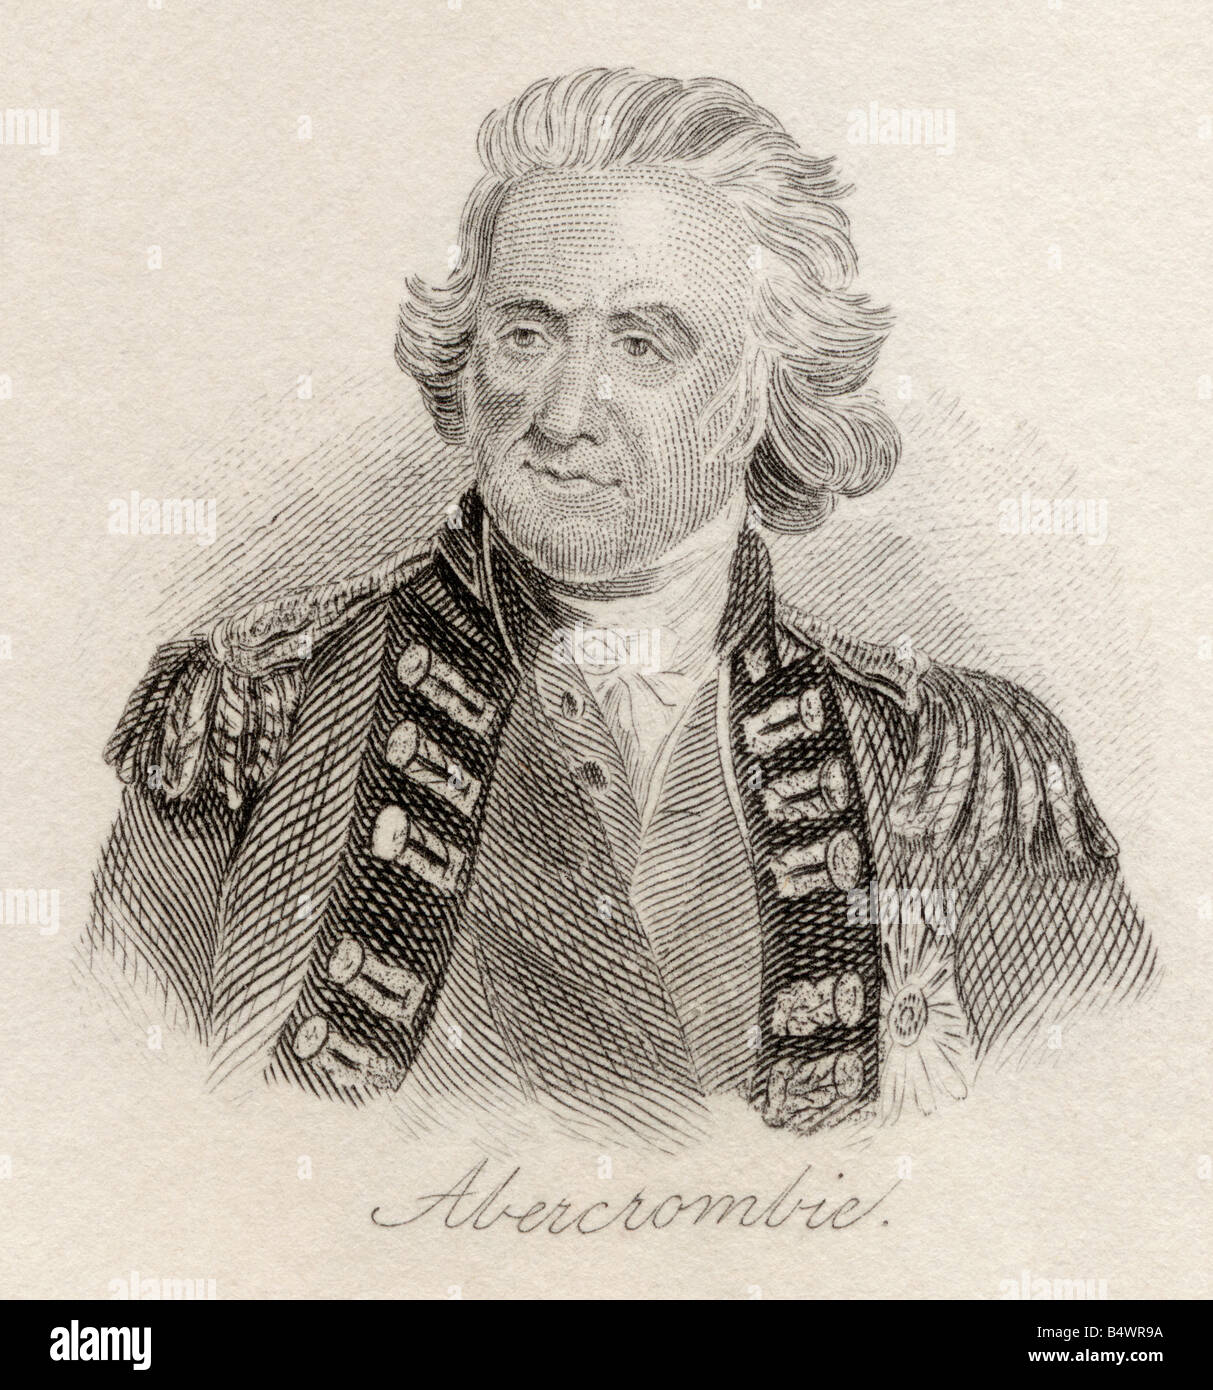 Sir Ralph Abercromby, 1734 - 1801. Général britannique. Tiré du livre Crabbs Historical Dictionary, publié en 1825. Banque D'Images